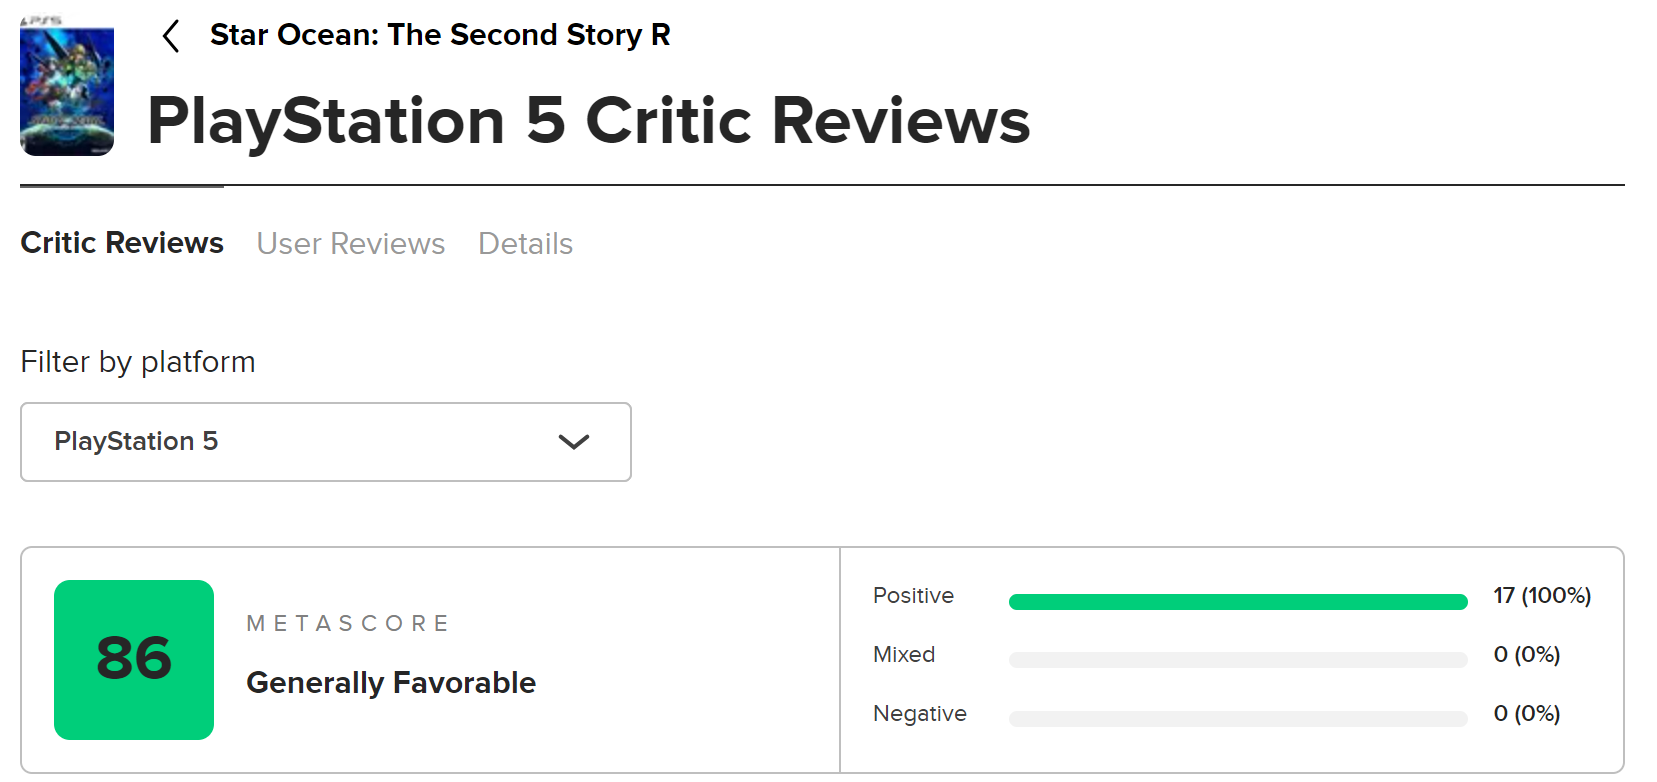 《星之海洋2：第二个故事R》正式发售：M站达到86分